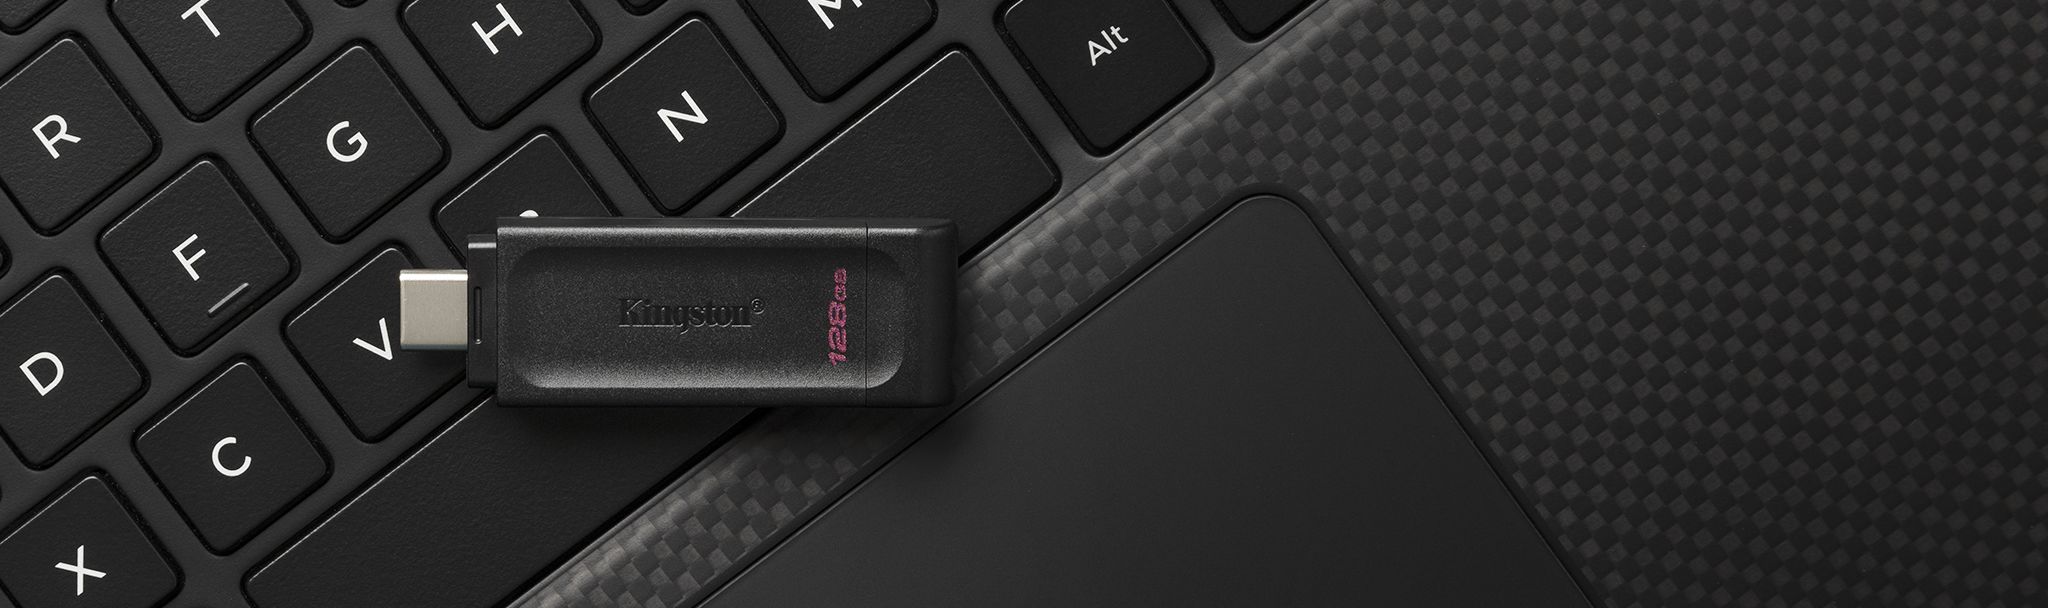 Předností USB flash disku Kingston DataTraveler 70 je i jeho kompaktní provedení, takže jej můžete mít neustále při ruce připravený k použití.